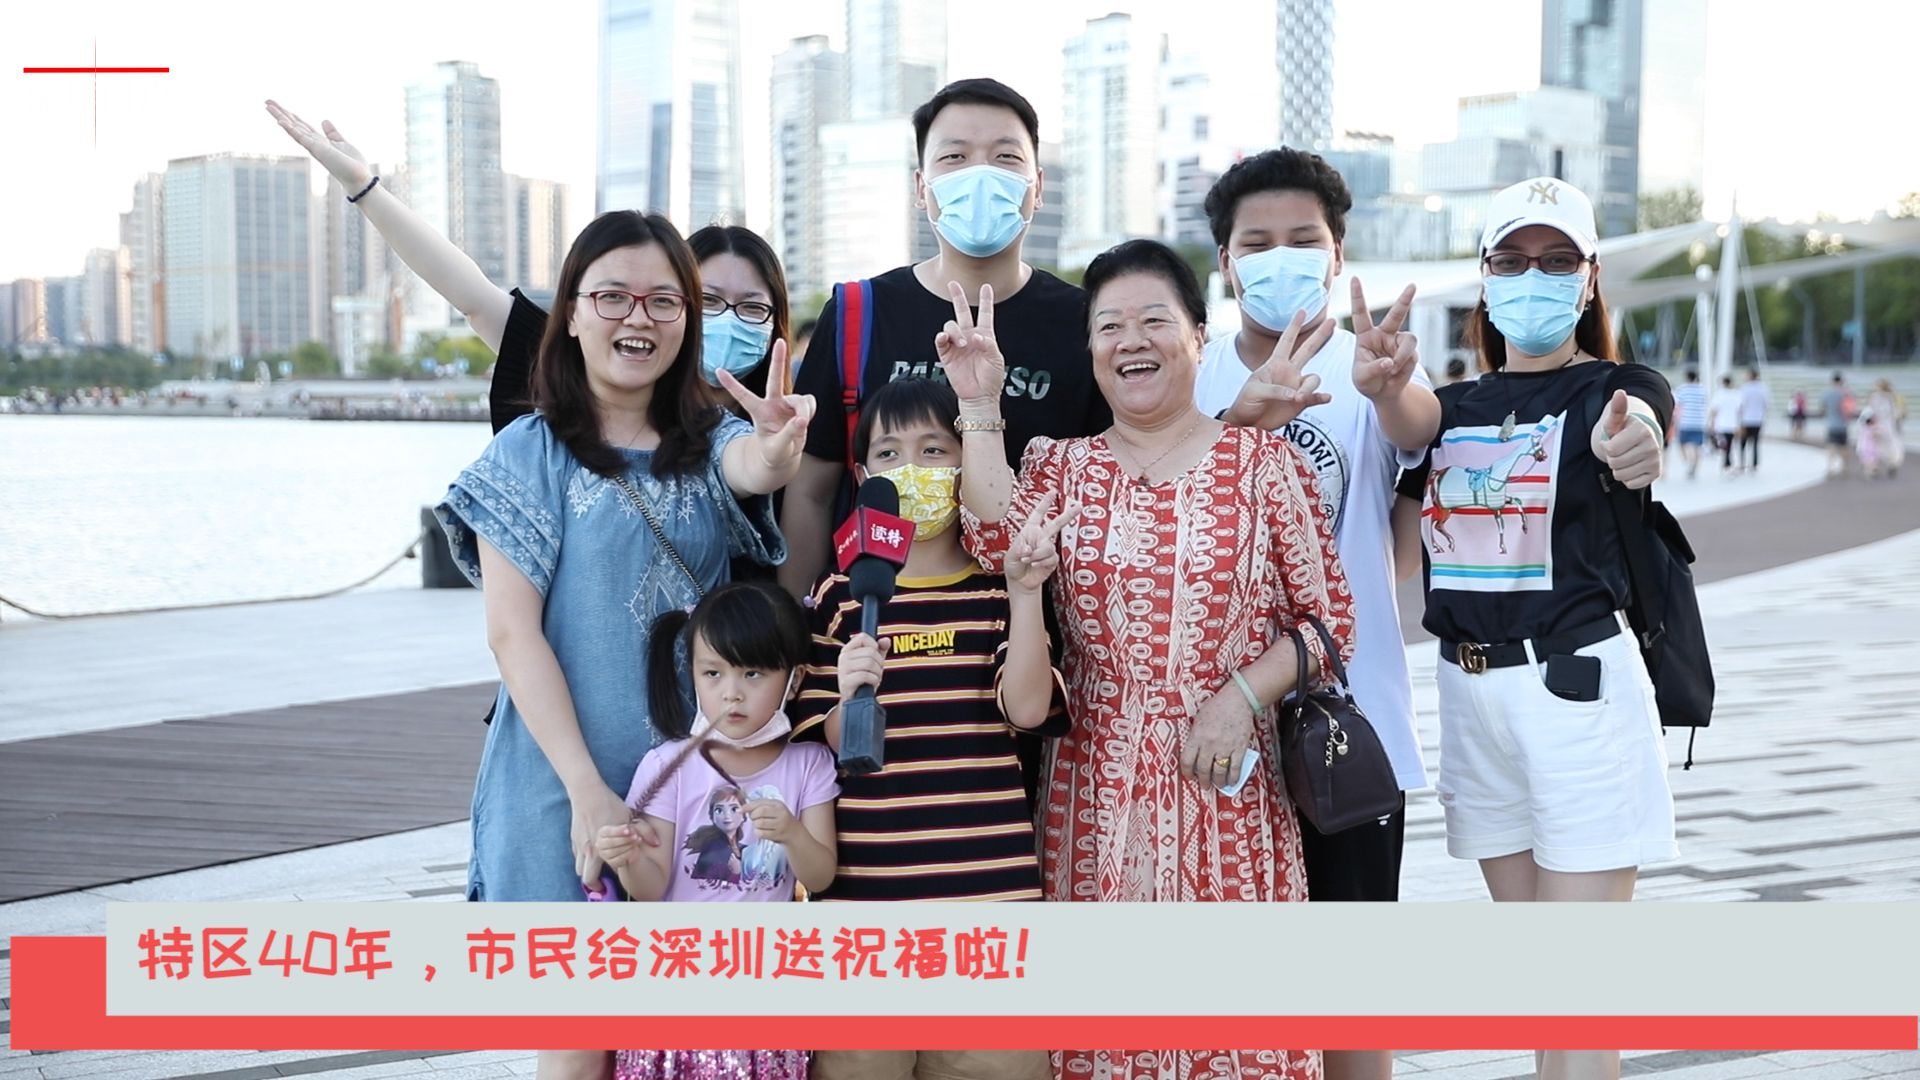 新闻路上说说说| 特区40年，市民给深圳送祝福啦！